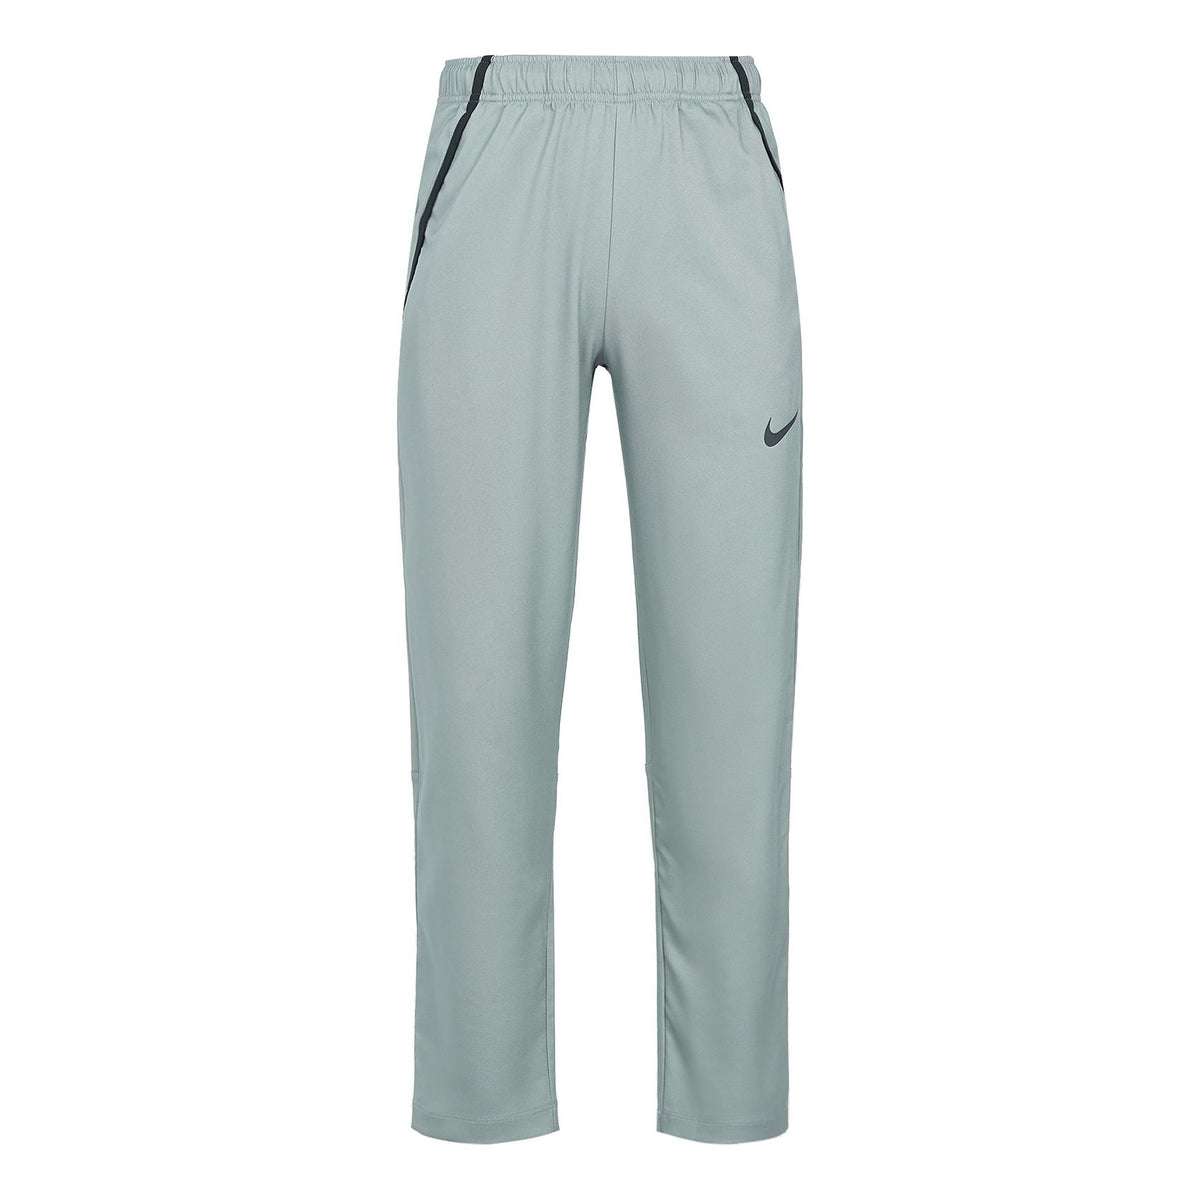 Nike Team Woven TattingCasual Long Pants Men Grey Gray CU4958-084 ...